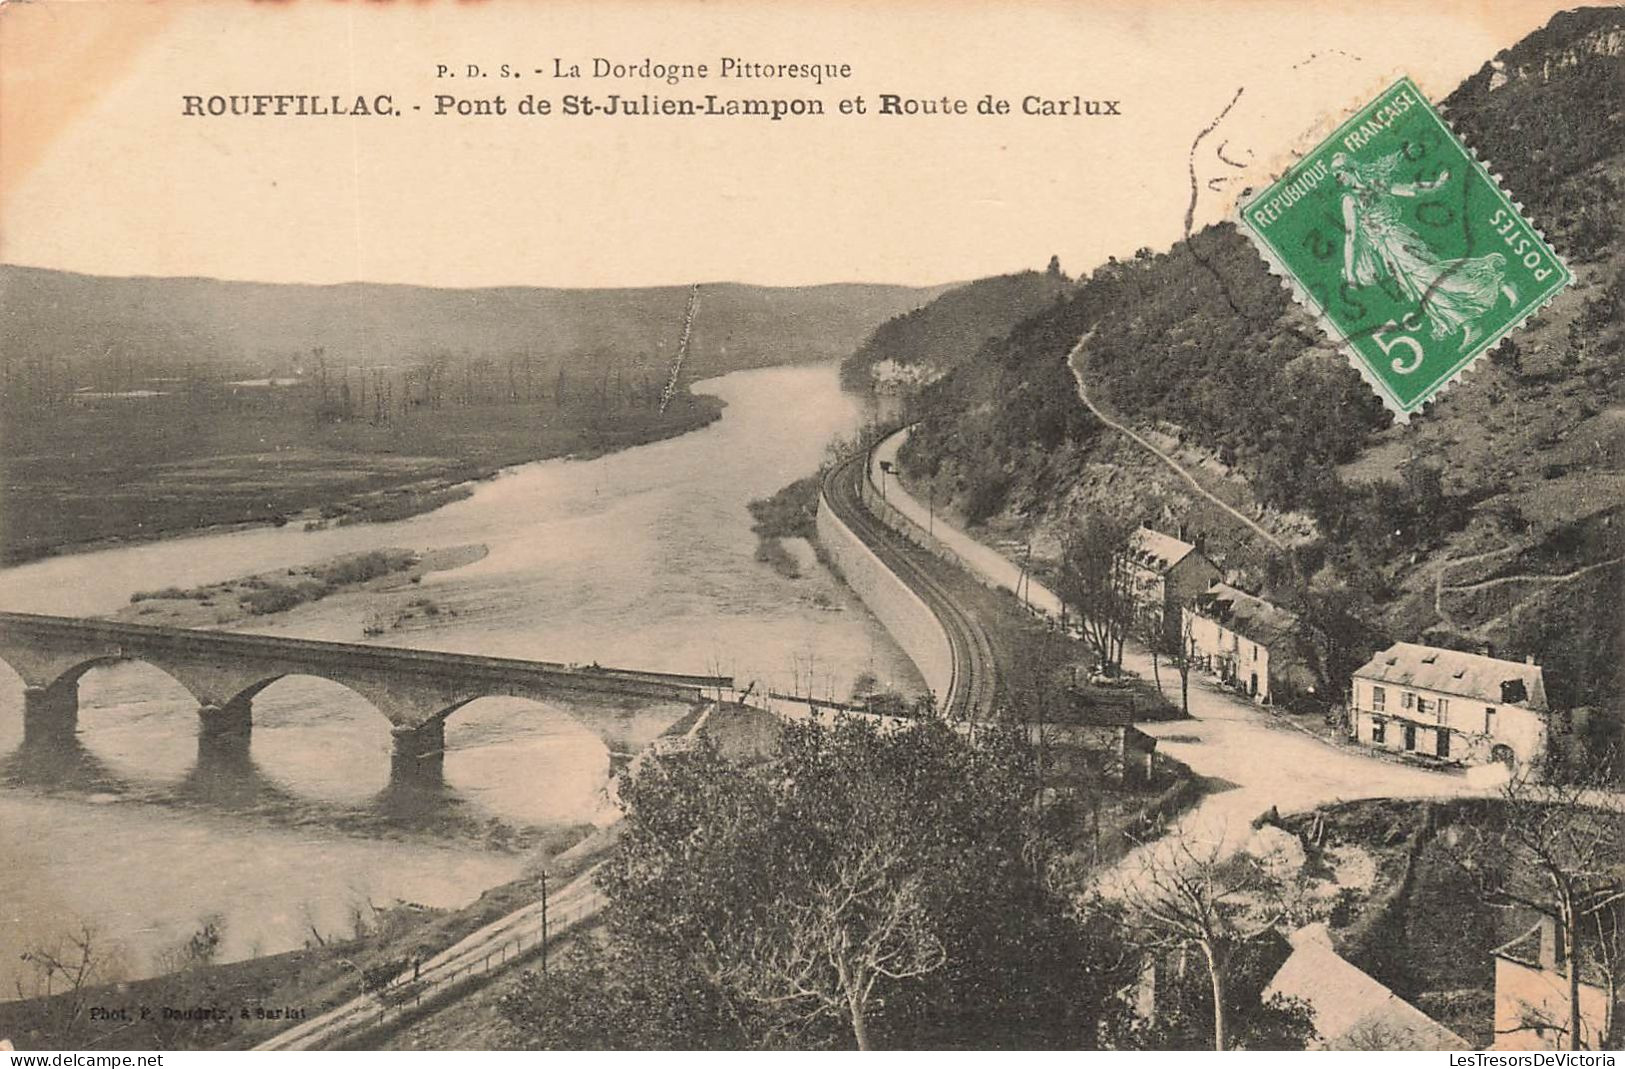 FRANCE - La Dordogne Pittoresque - Rouffillac - Pont De St Julien Lampon Et Route De Carlux - Carte Postale Ancienne - Sarlat La Caneda